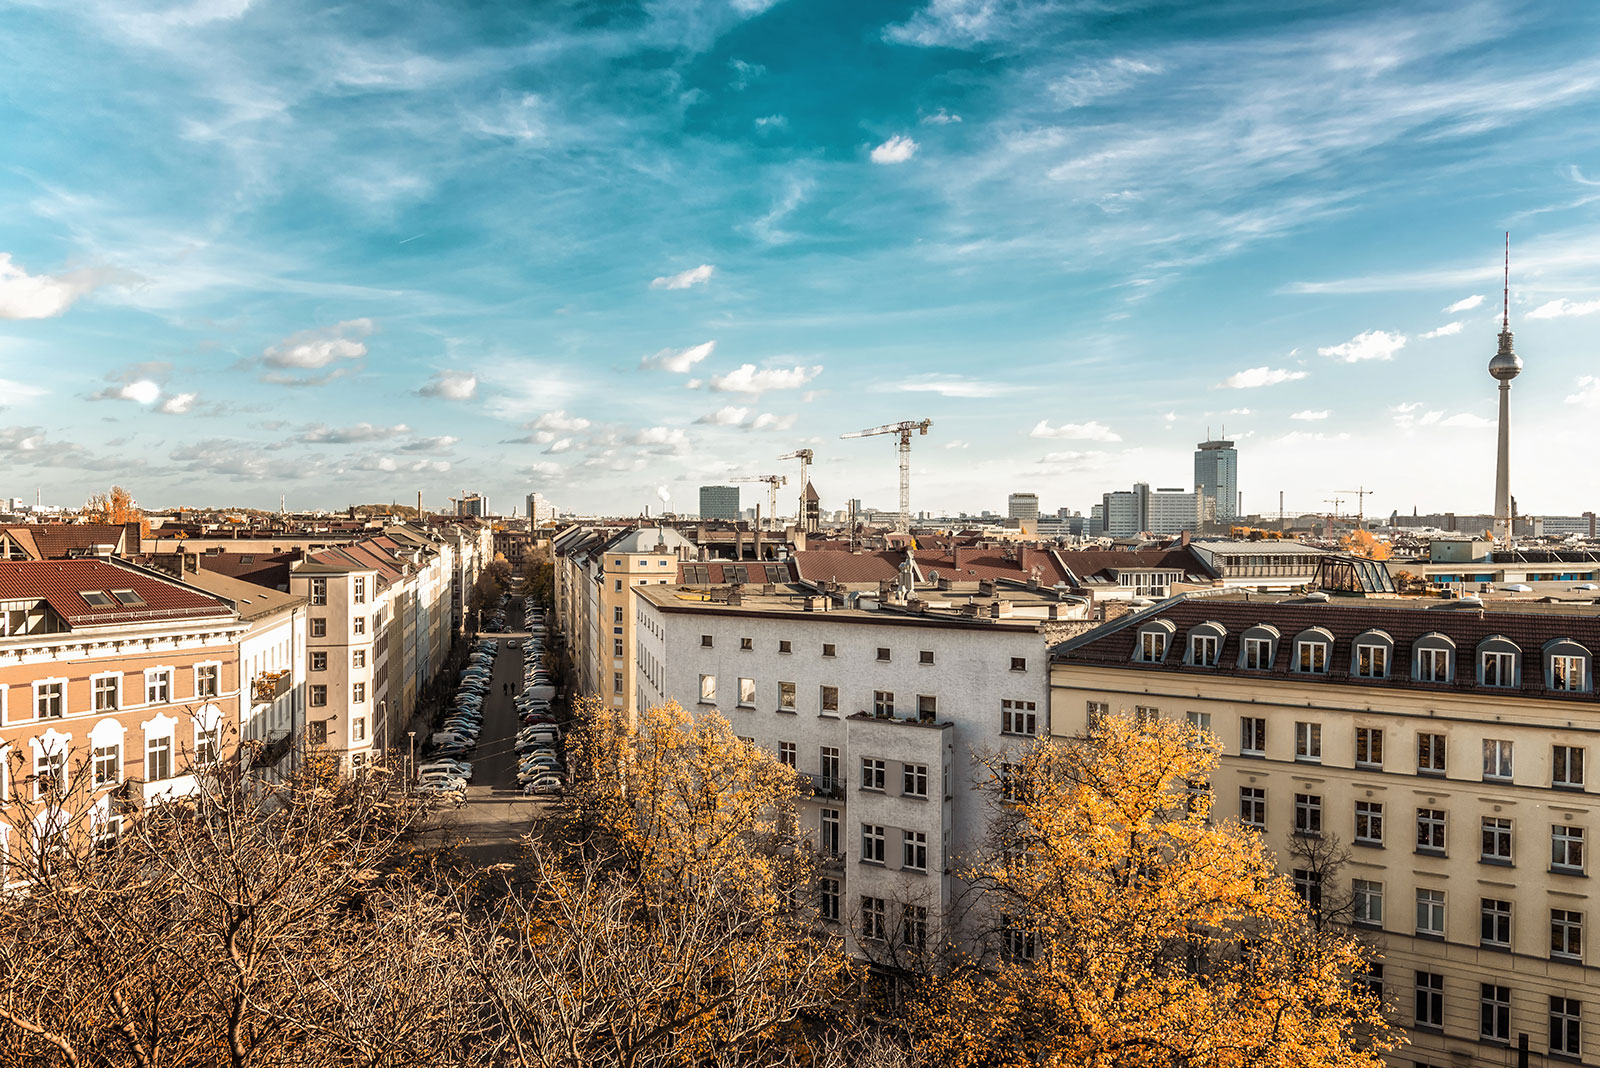 Die Skyline von Berlin mit Altbauhäusern im Vordergrund und dem Fernsehturm im Hintergrund